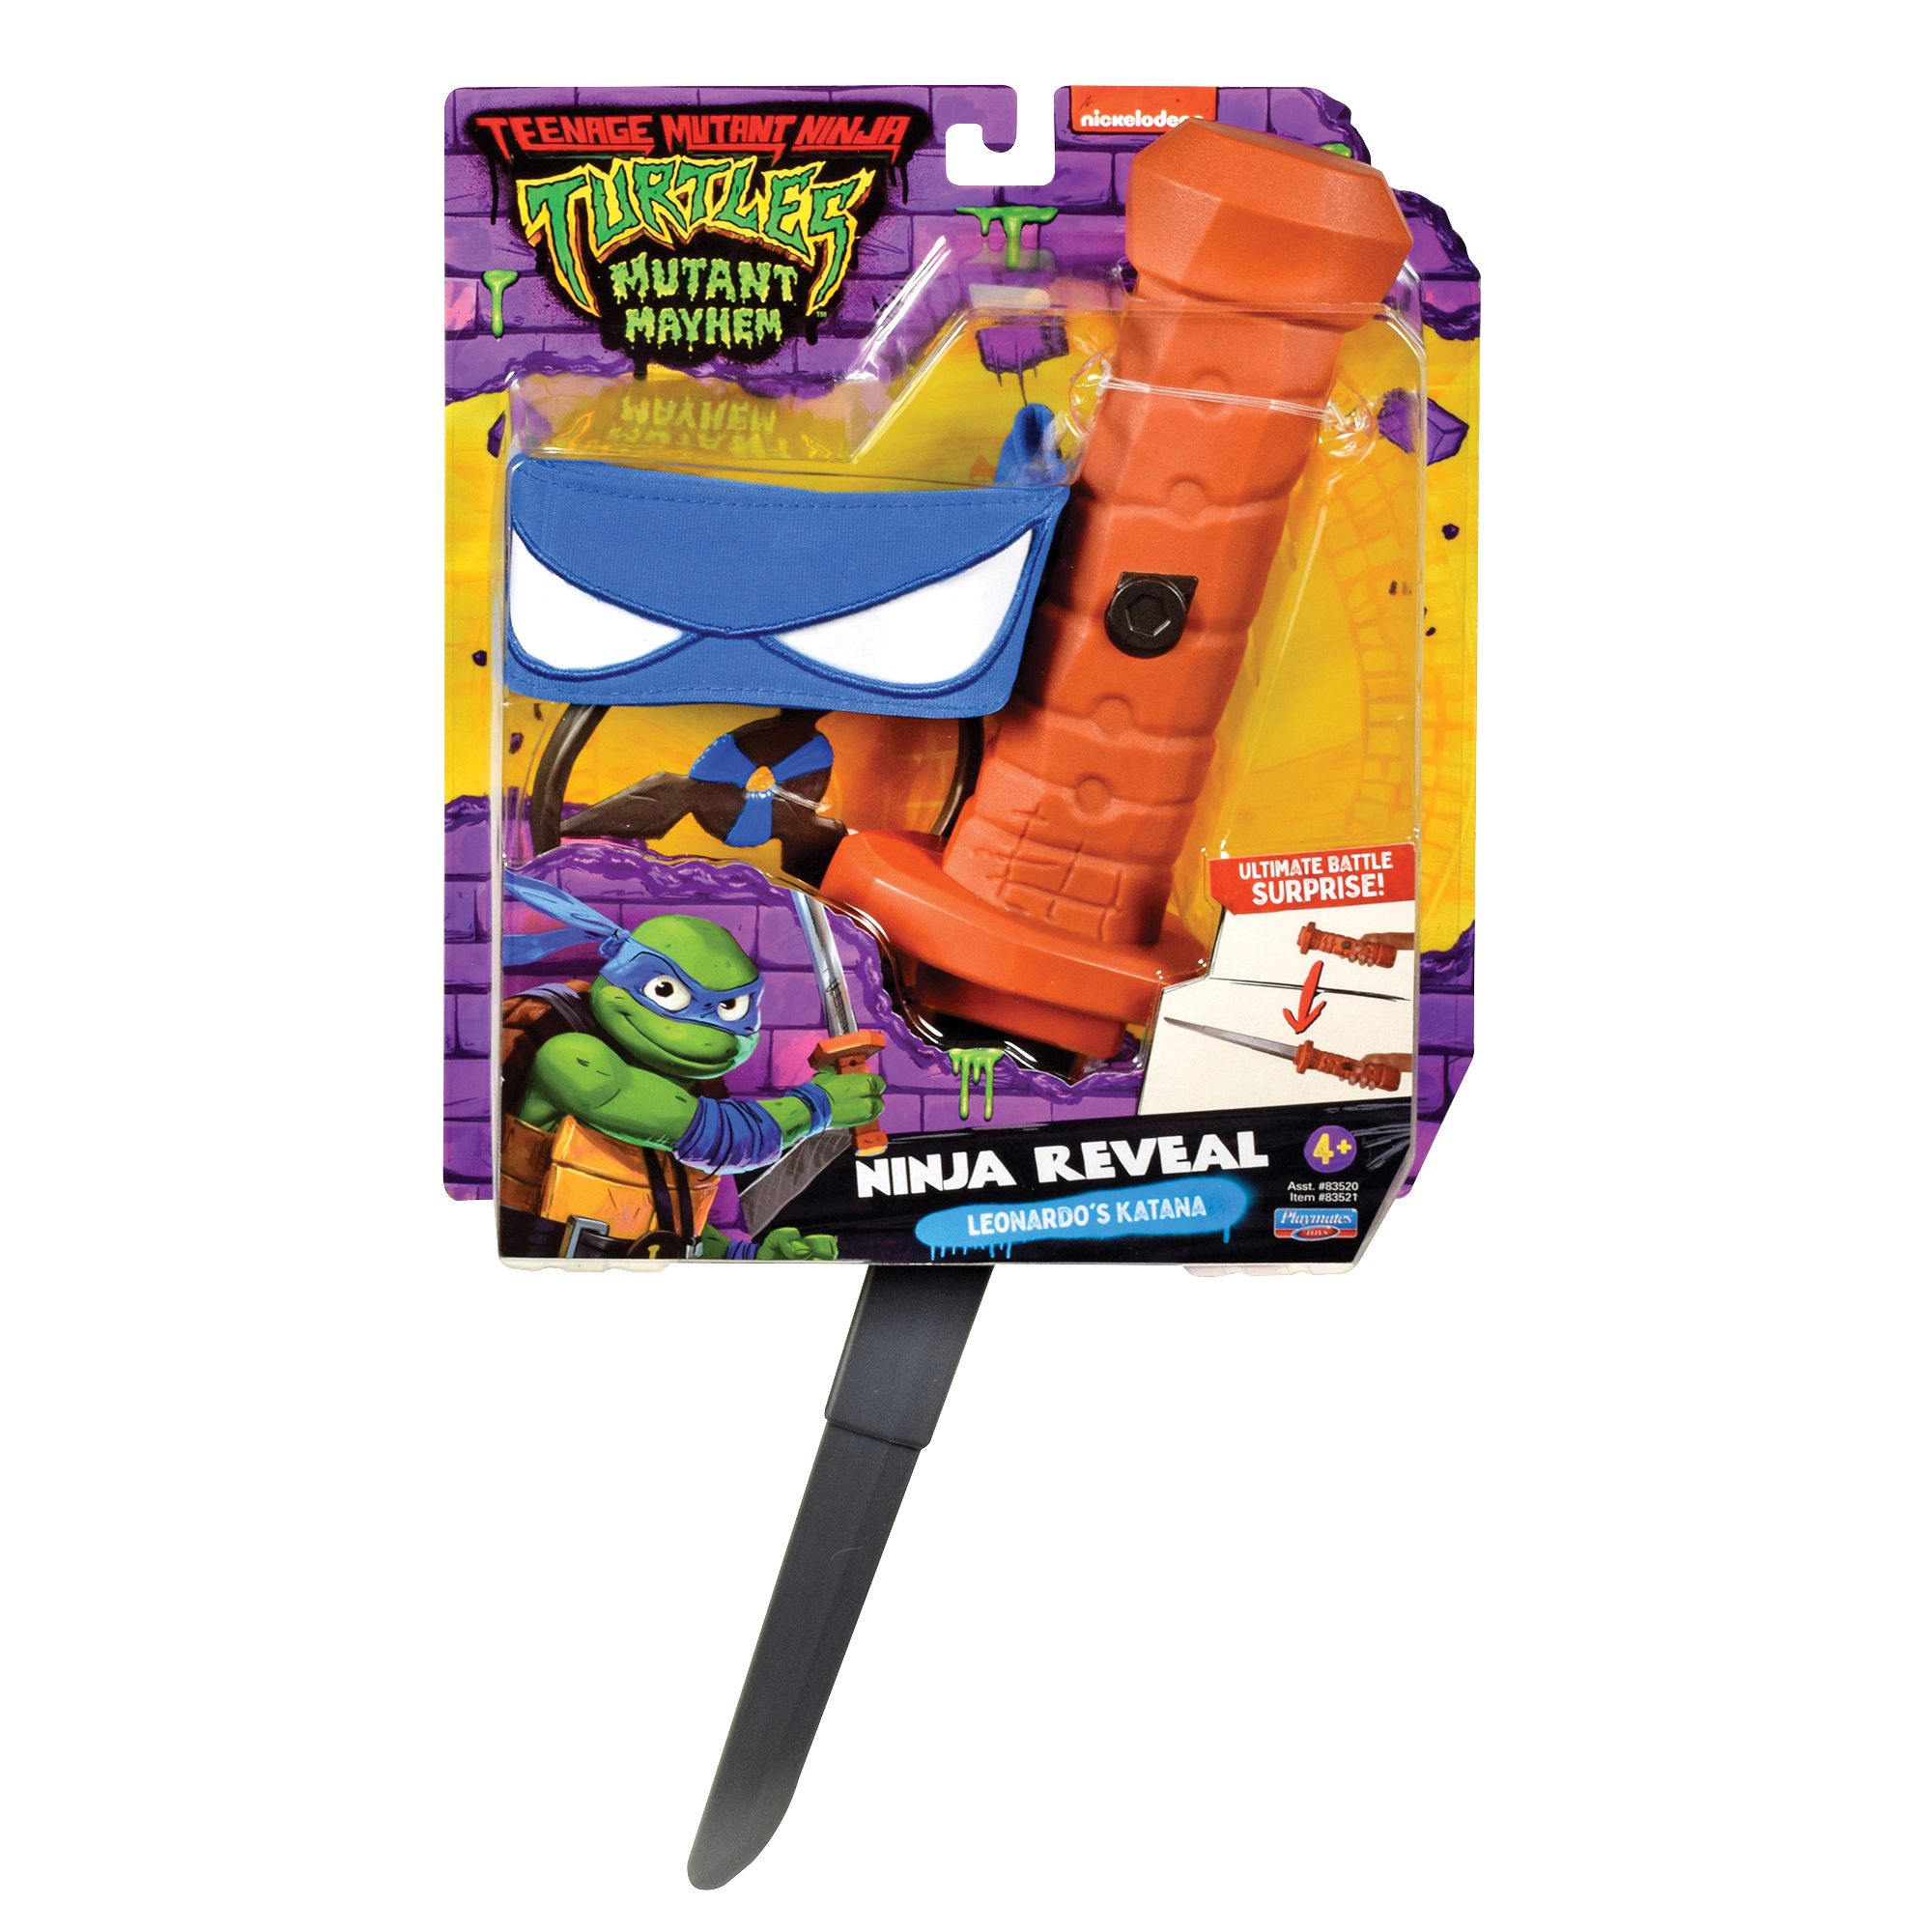  Teenage Mutant Ninja Turtles: Mutant Mayhem Basic Figure Turtle  4-Pack Bundle by Playmates Toys : Toys & Games